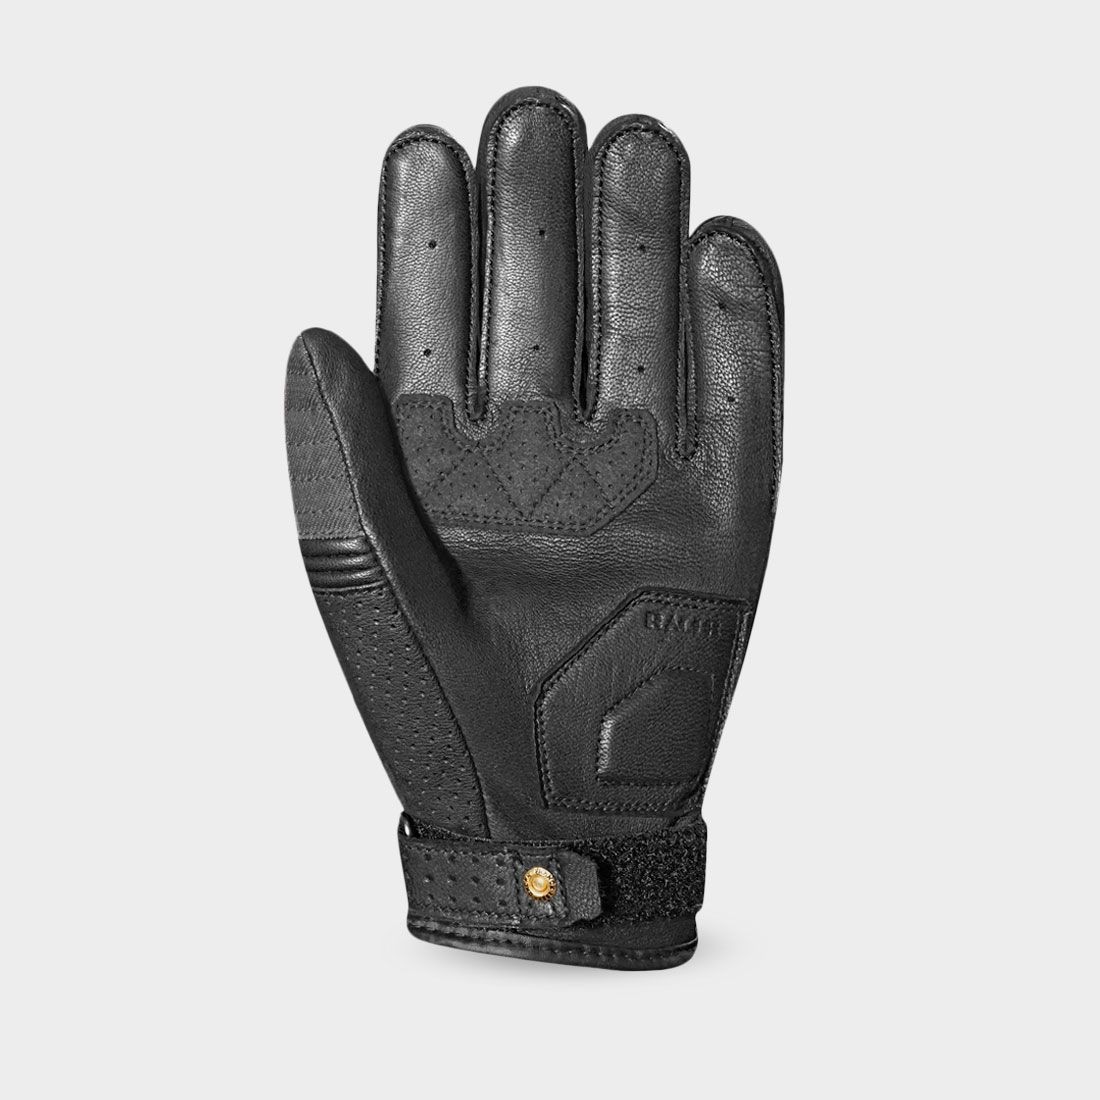 OSAKA - Summer motorcycle gloves for men